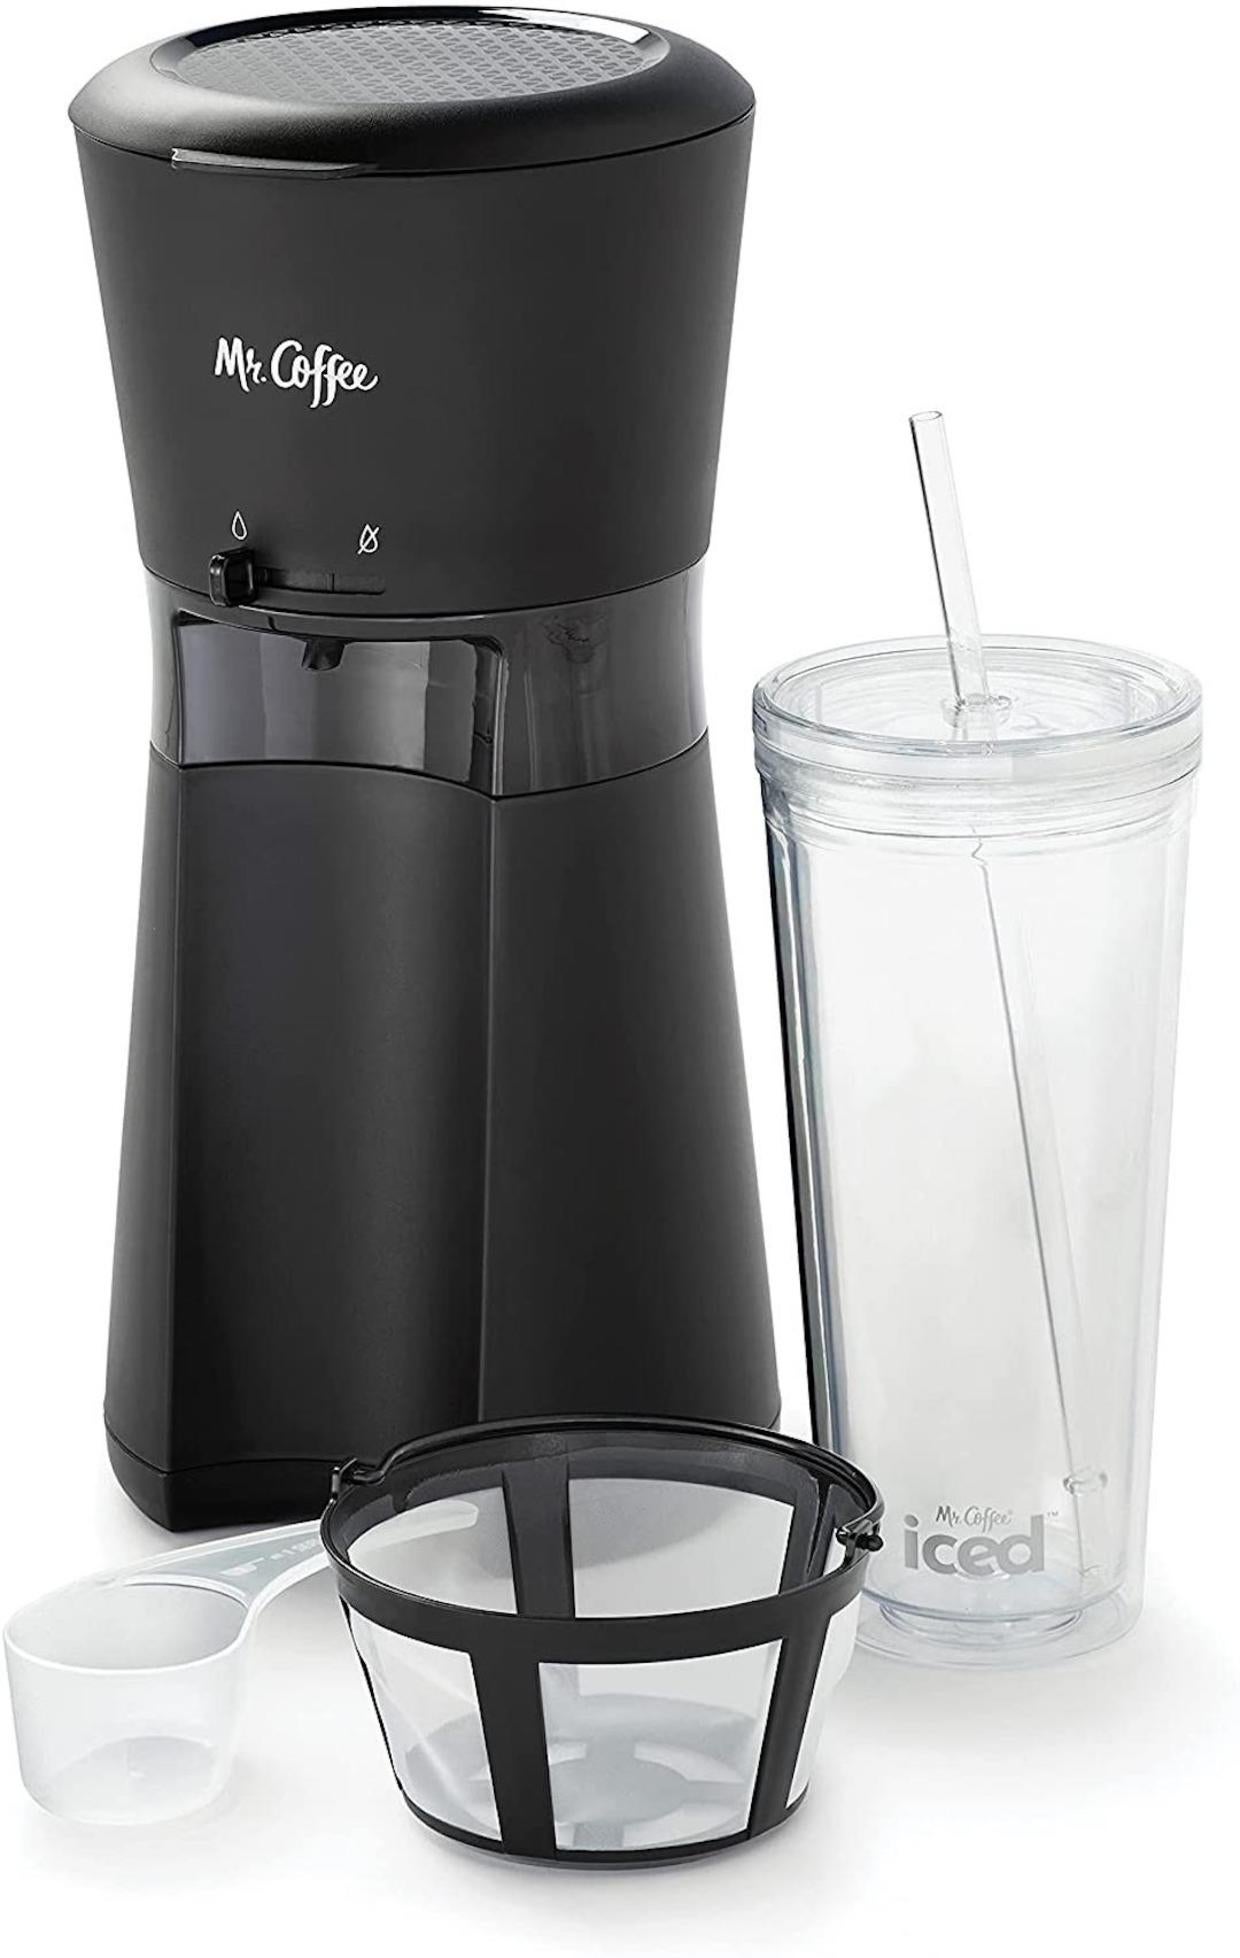 Mr. Coffee iced-coffee maker